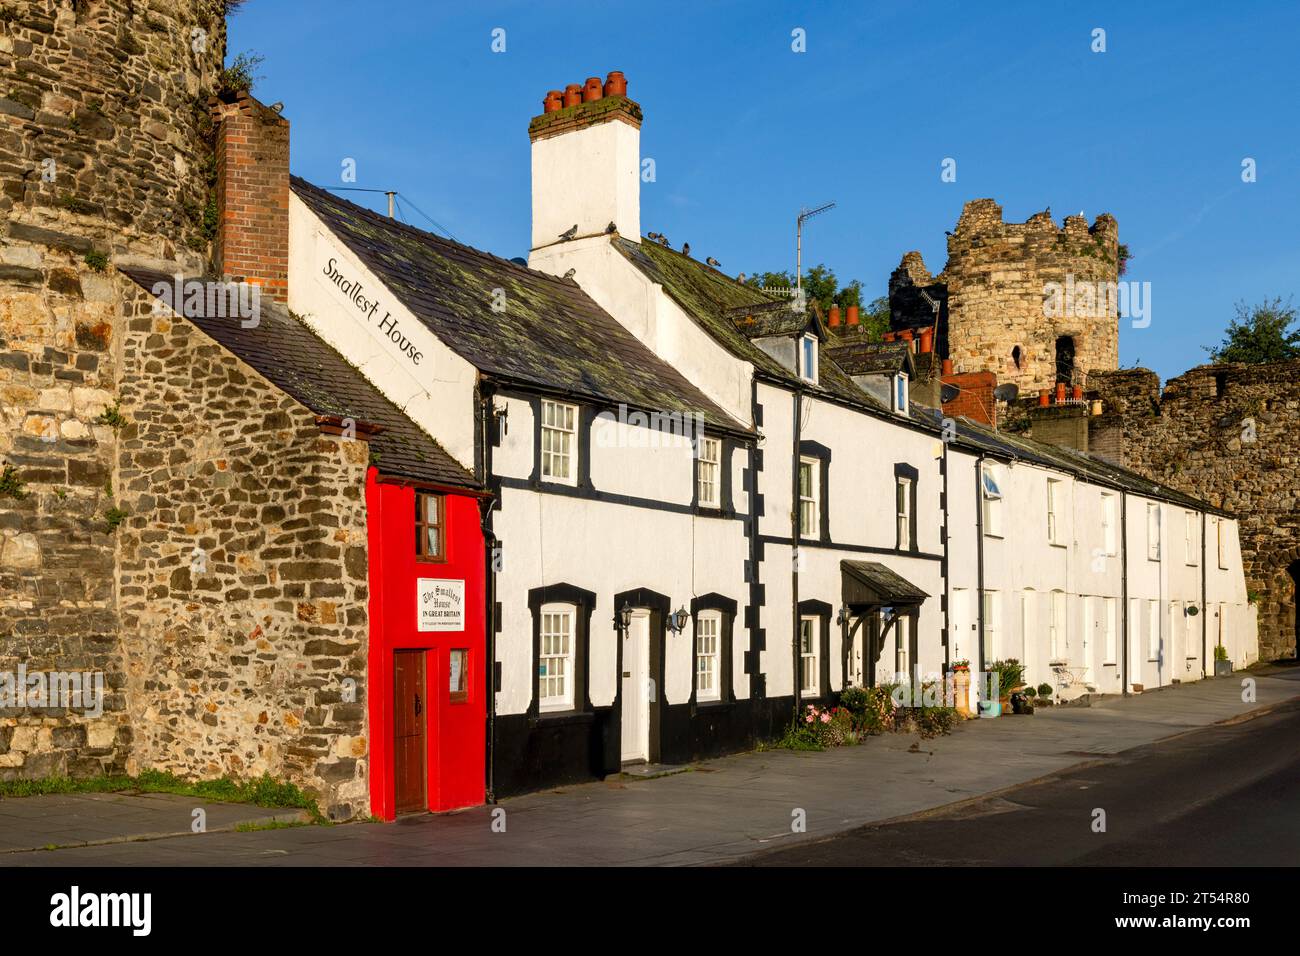 Conwy est une ville historique du nord du pays de Galles avec un château médiéval et la plus petite maison de Grande-Bretagne. Banque D'Images